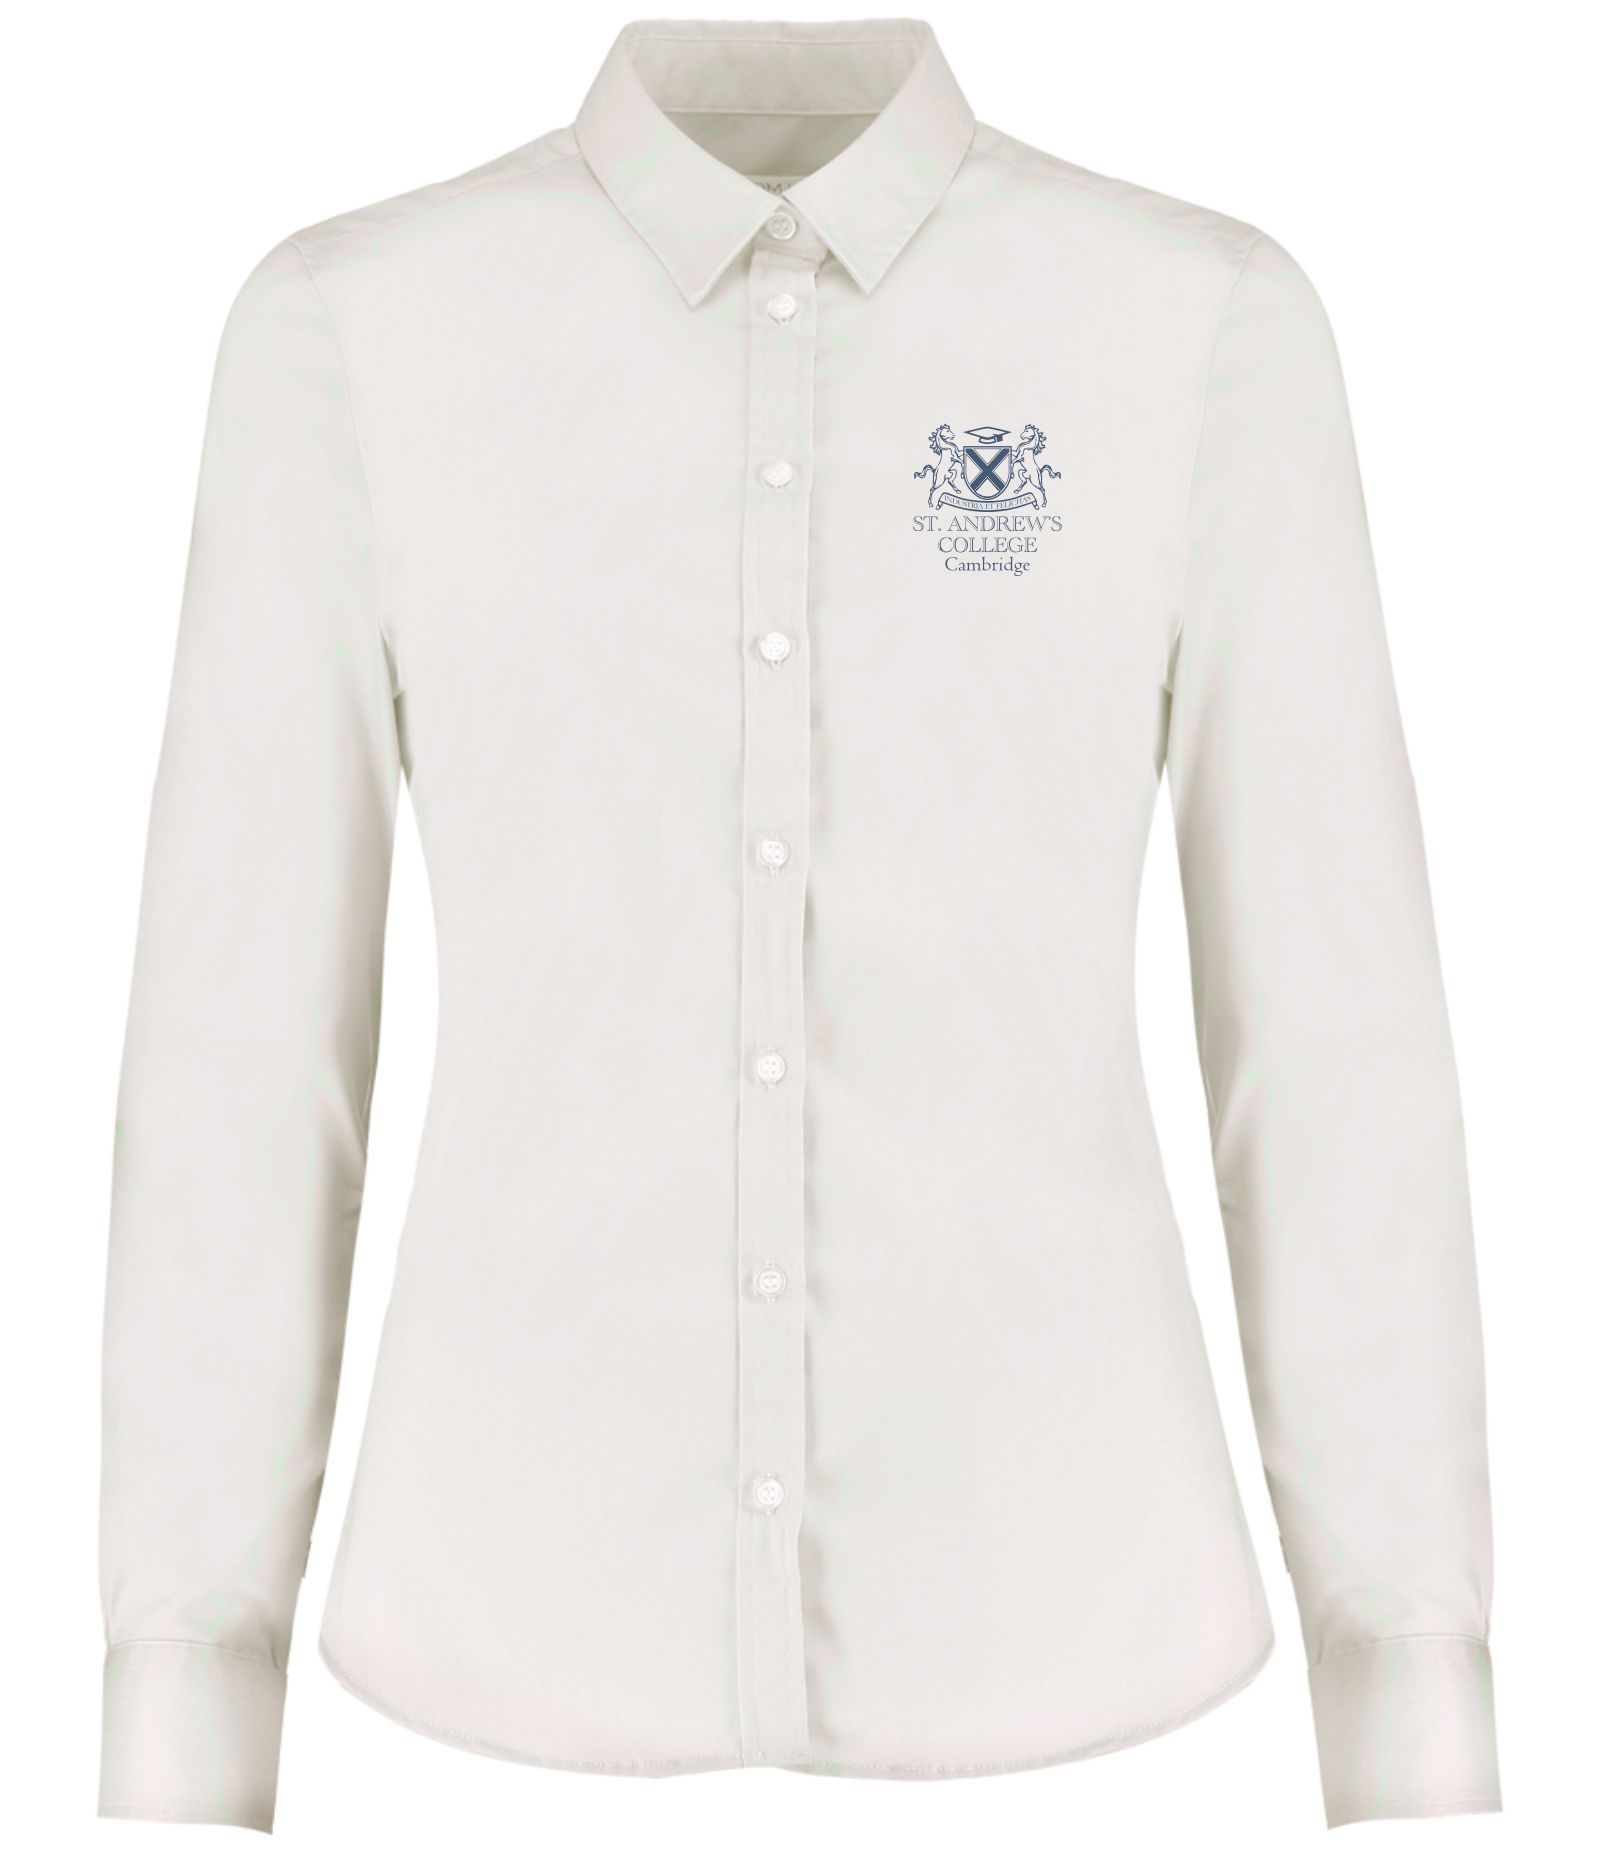 St Andrew's College Cambridge - Long Sleeve Shirt (Ladies)